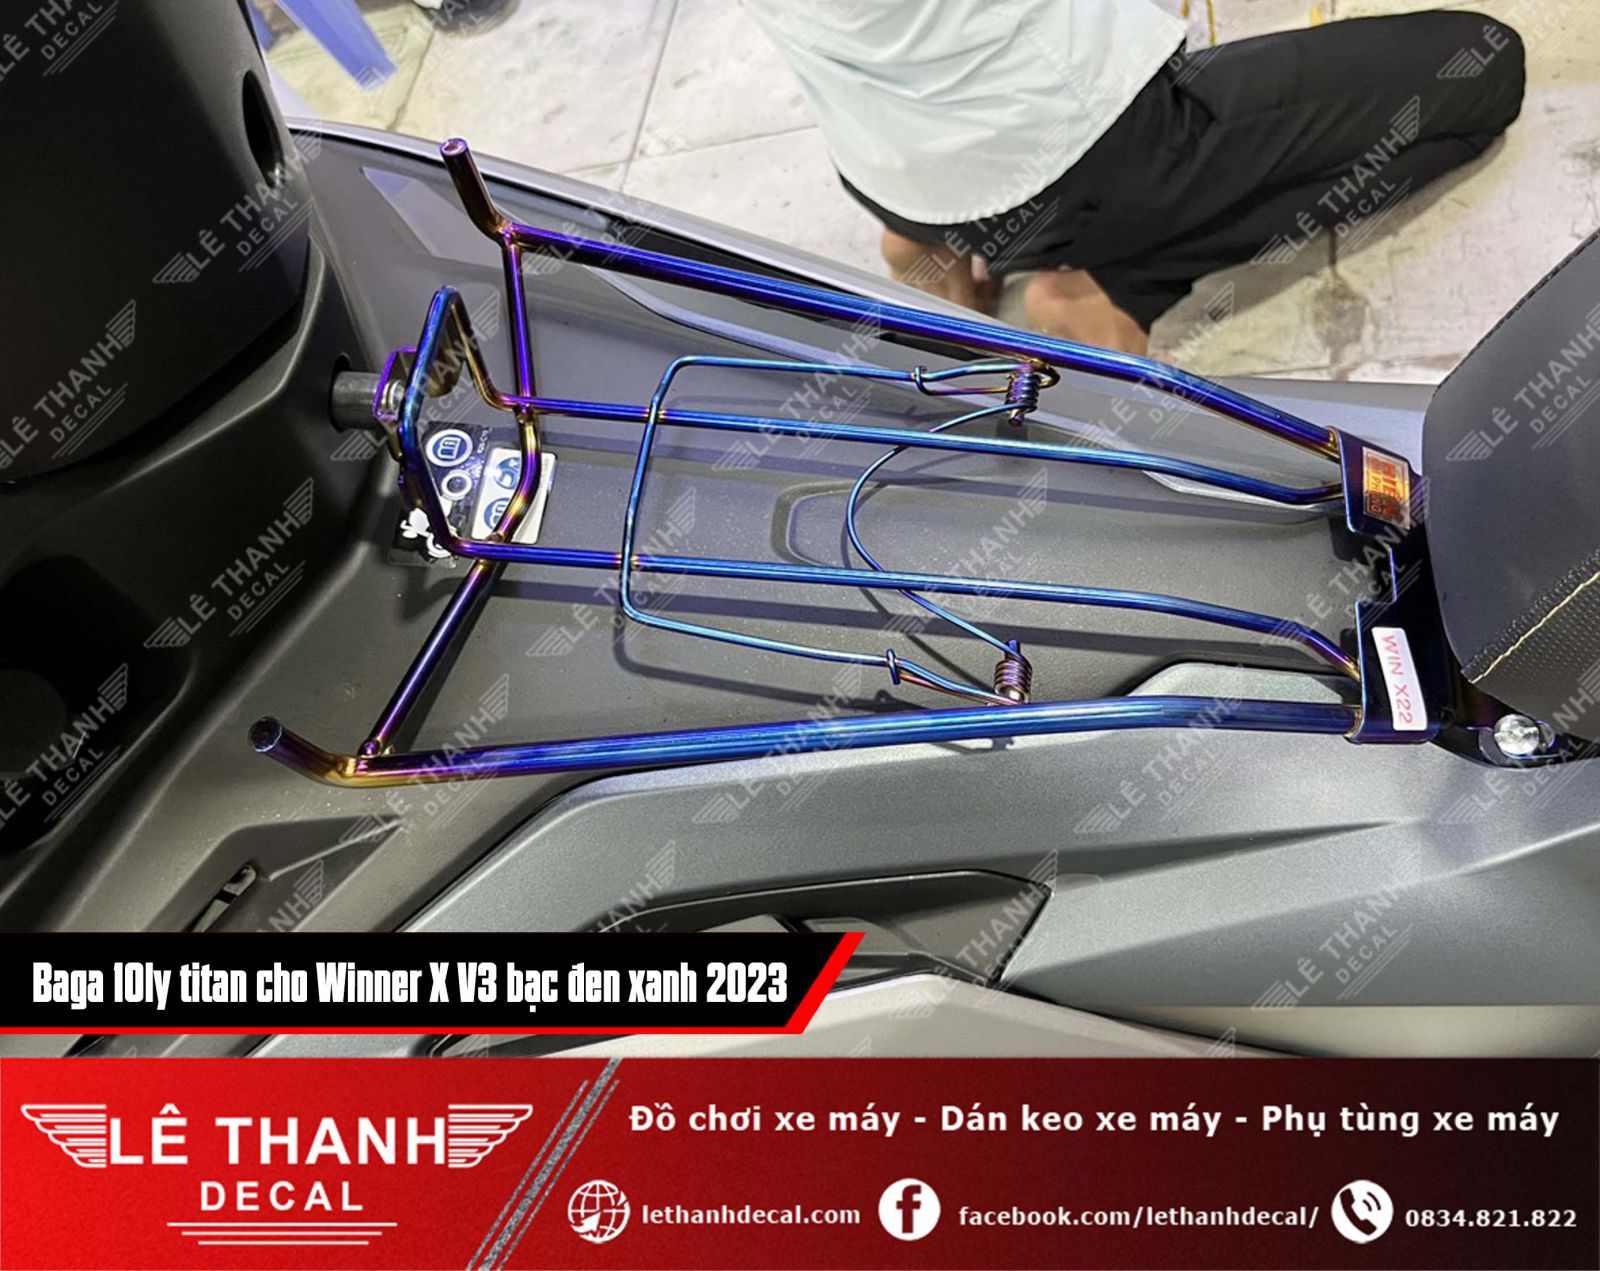 baga titan 10ly cho xe máy Winner X V3 2023 bạc đen xanh